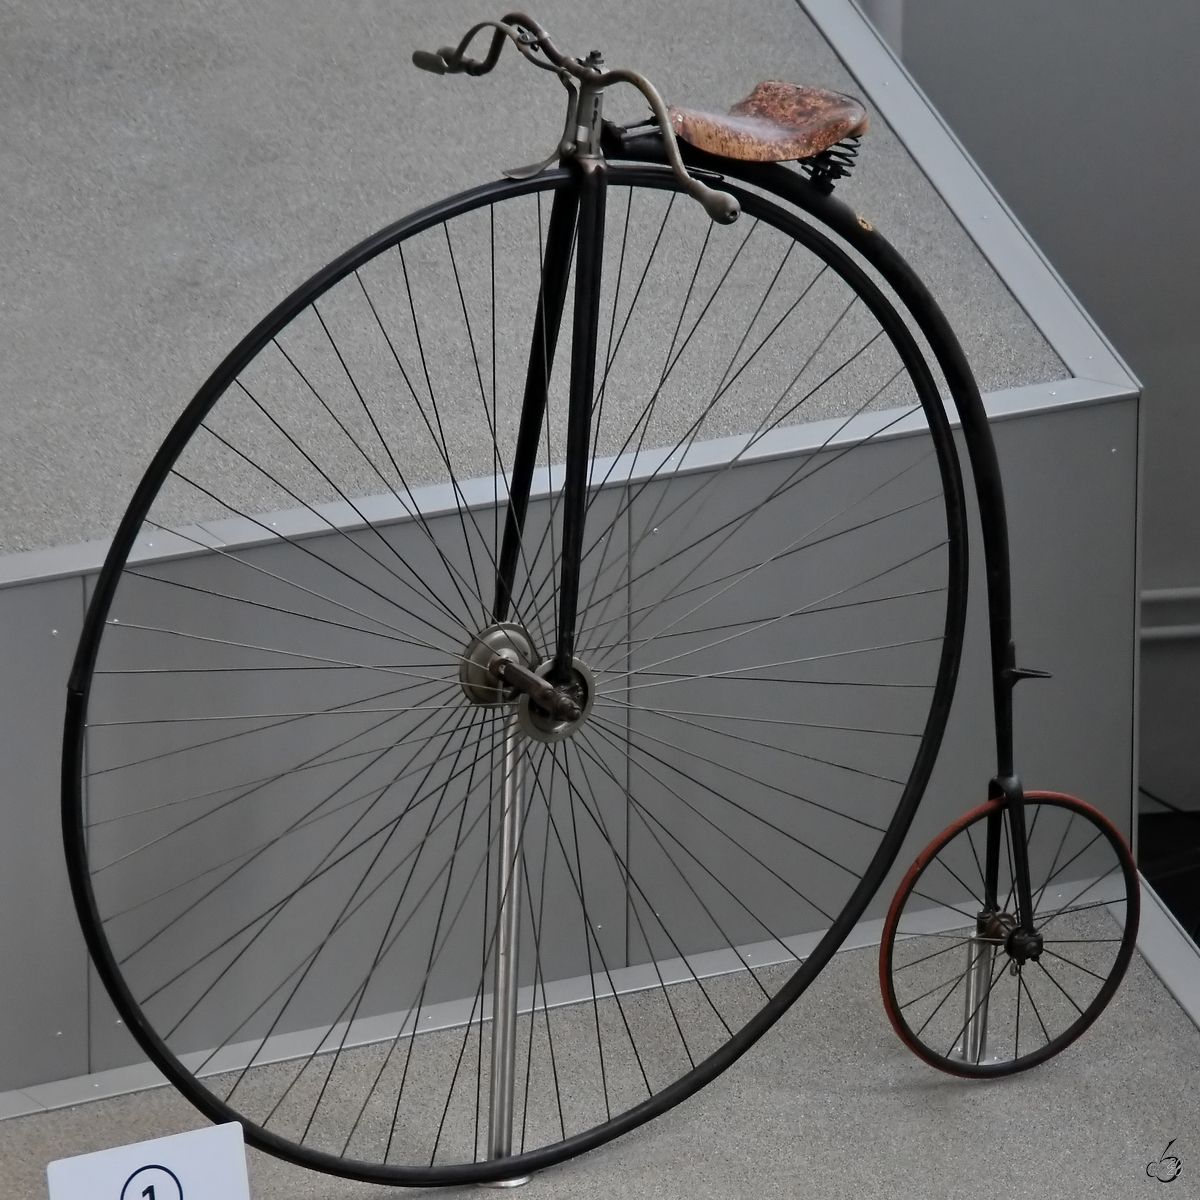 Ein englisches Hochrennrad aus dem Jahr 1883, so gesehen Mitte August 2020 im Verkehrszentrum des Deutschen Museums München.